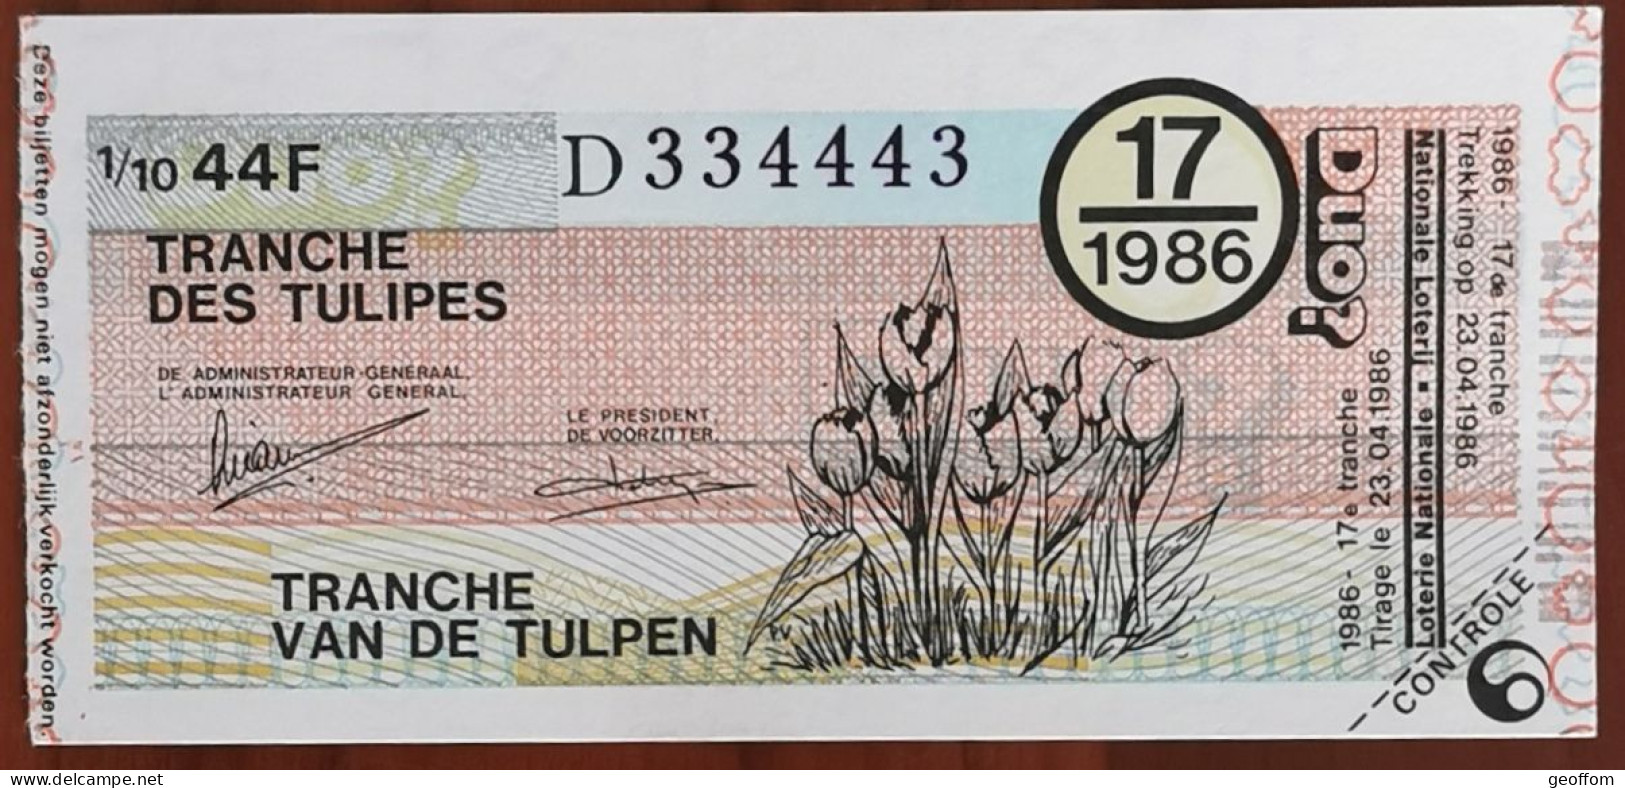 Billet De Loterie Nationale Belgique 1986 17e Tranche Des Tulipes - 23-4-1986 - Biglietti Della Lotteria